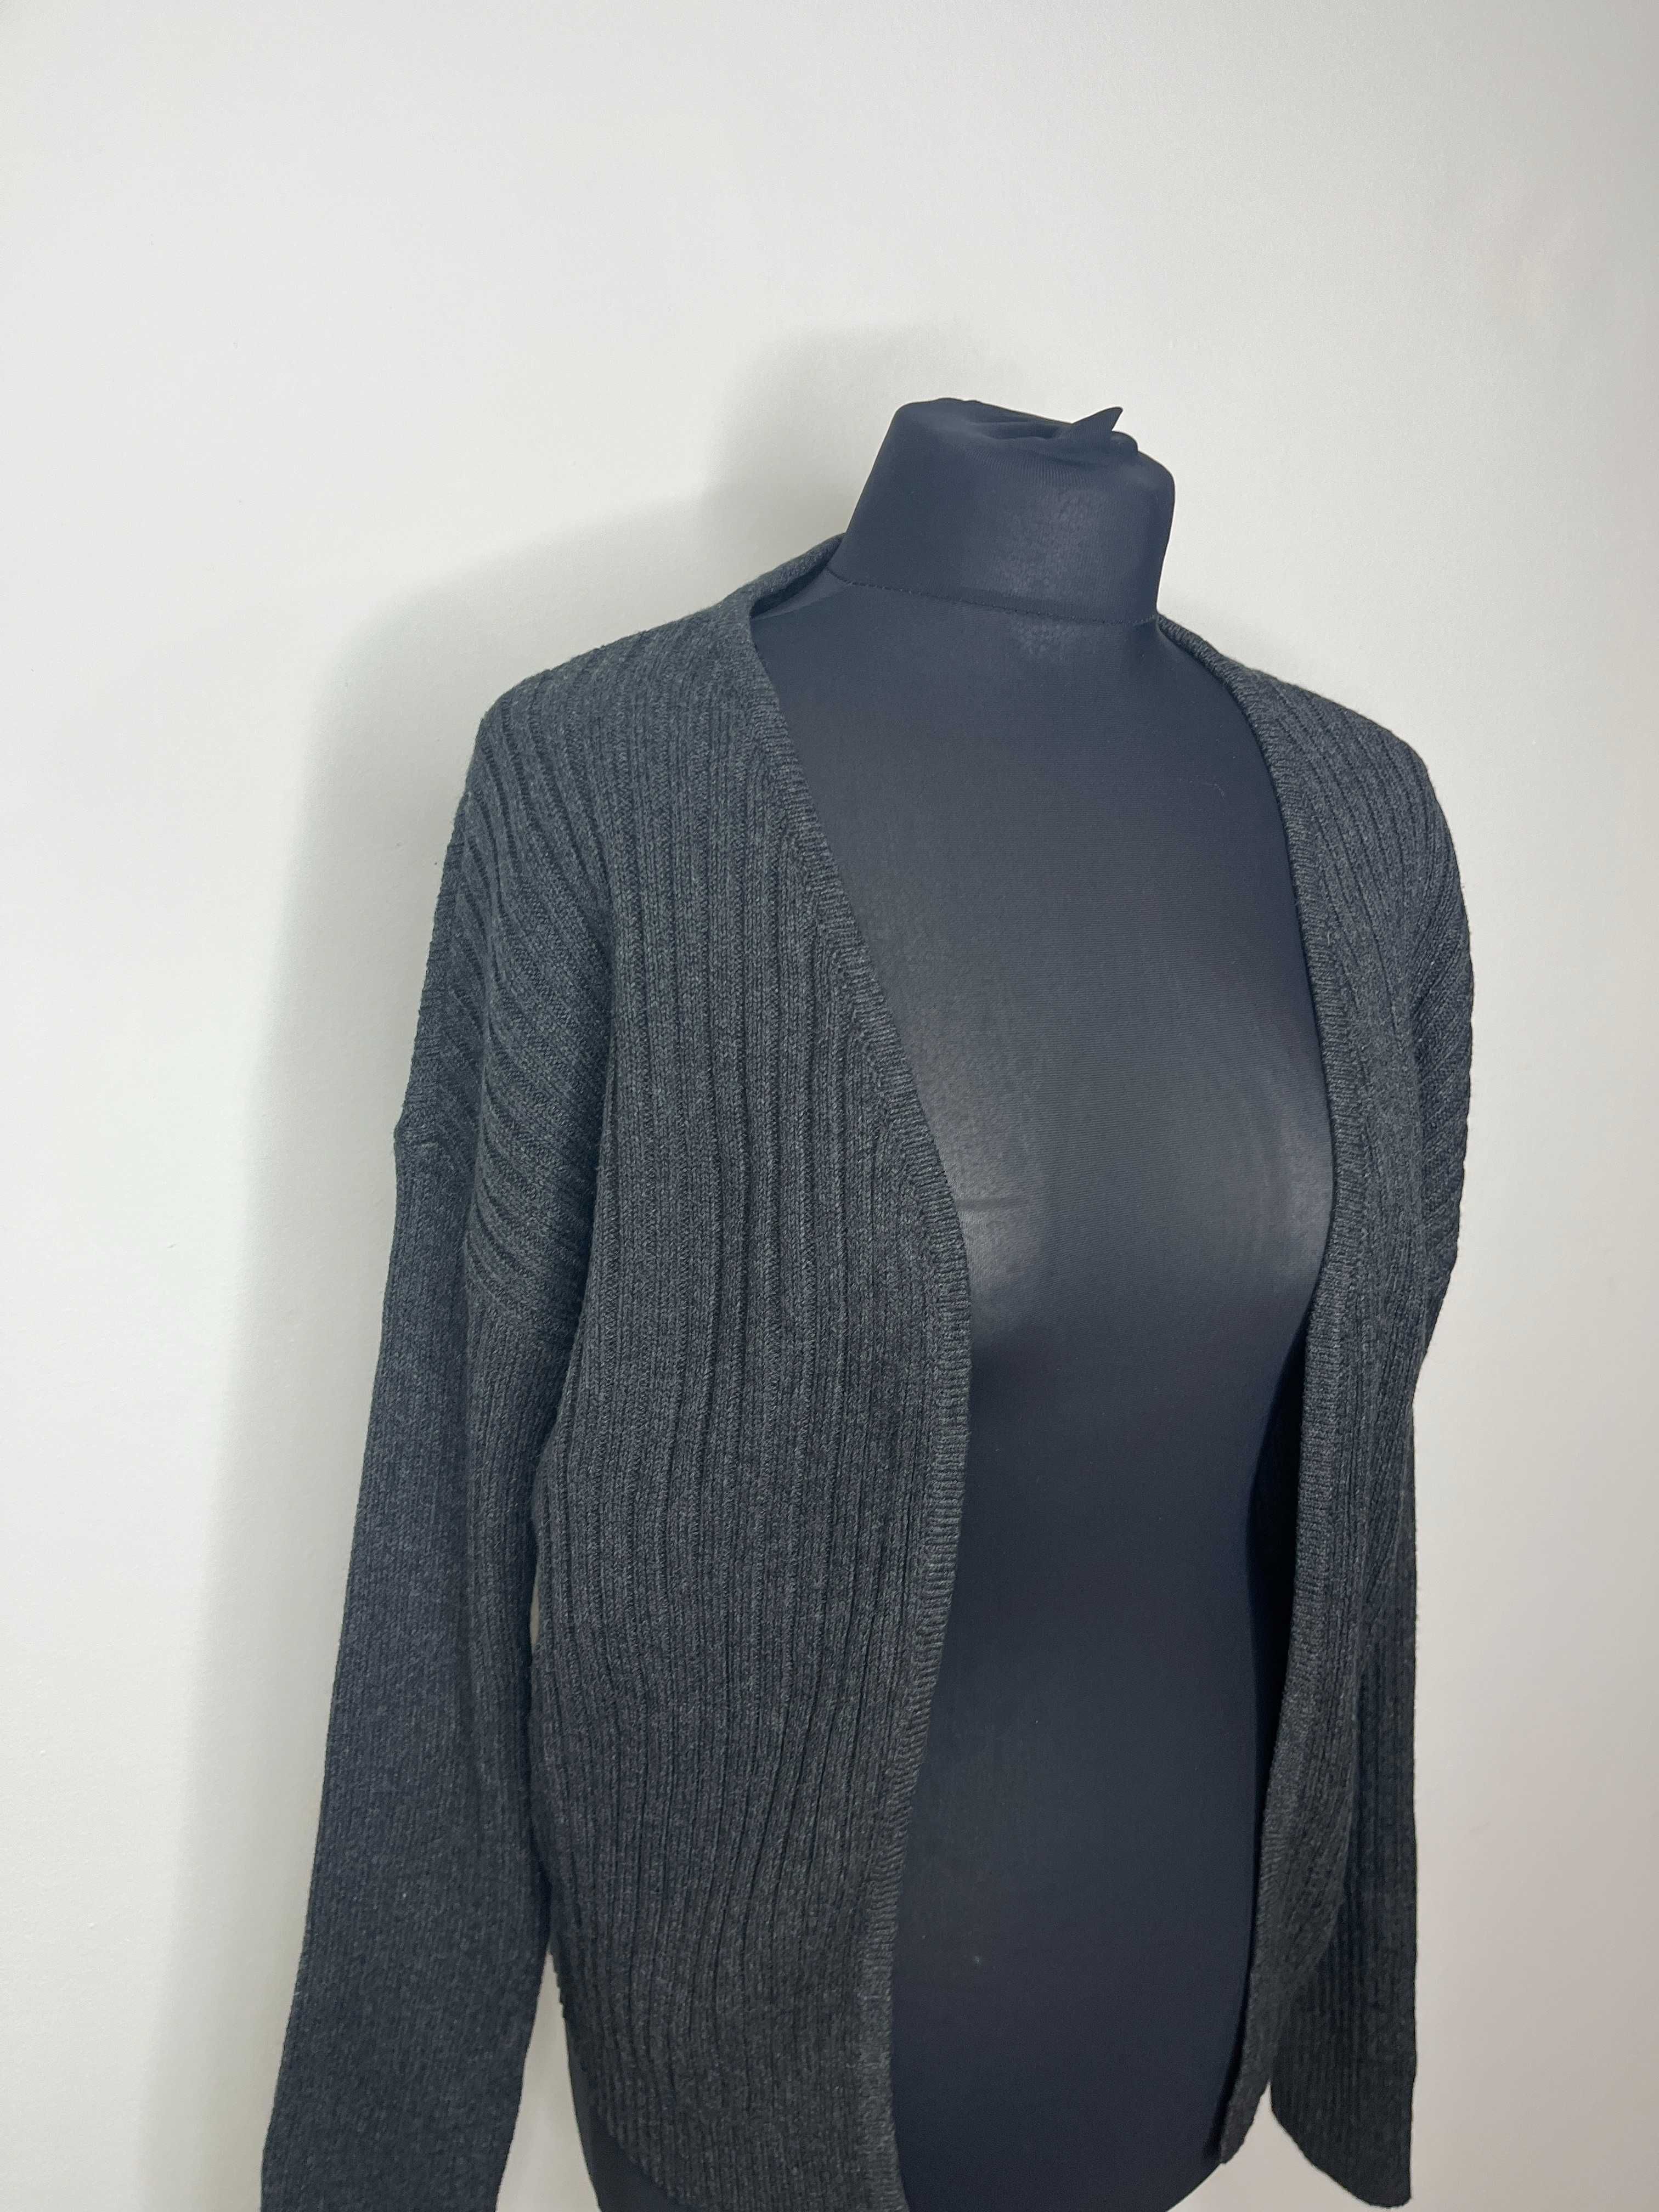 Szary popielaty sweter bawełniany kardigan Bonprix rozmiar S/M 36/38